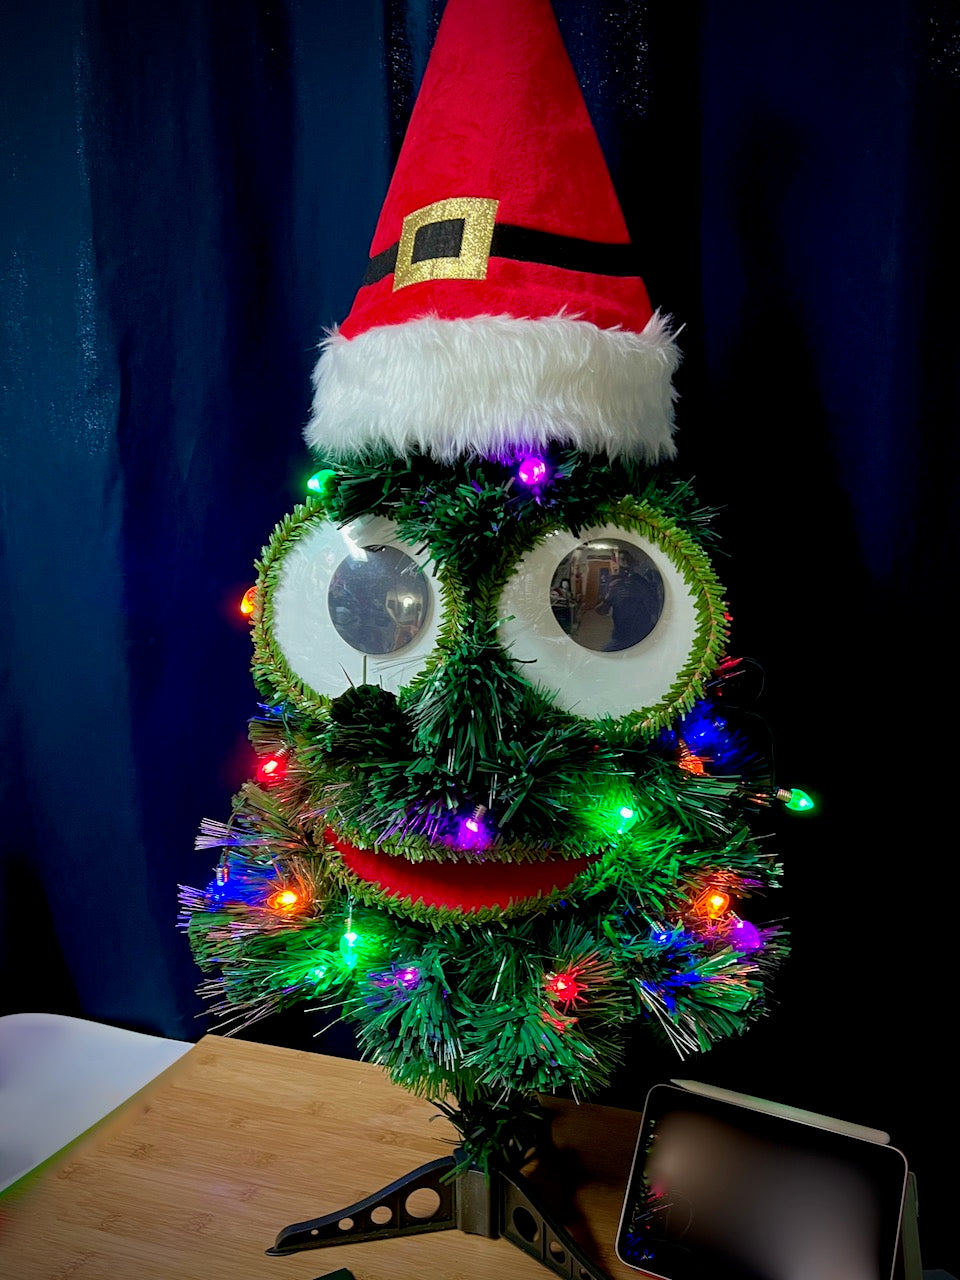 Circuit-Tree the Animatronic Singing Christmas Tree